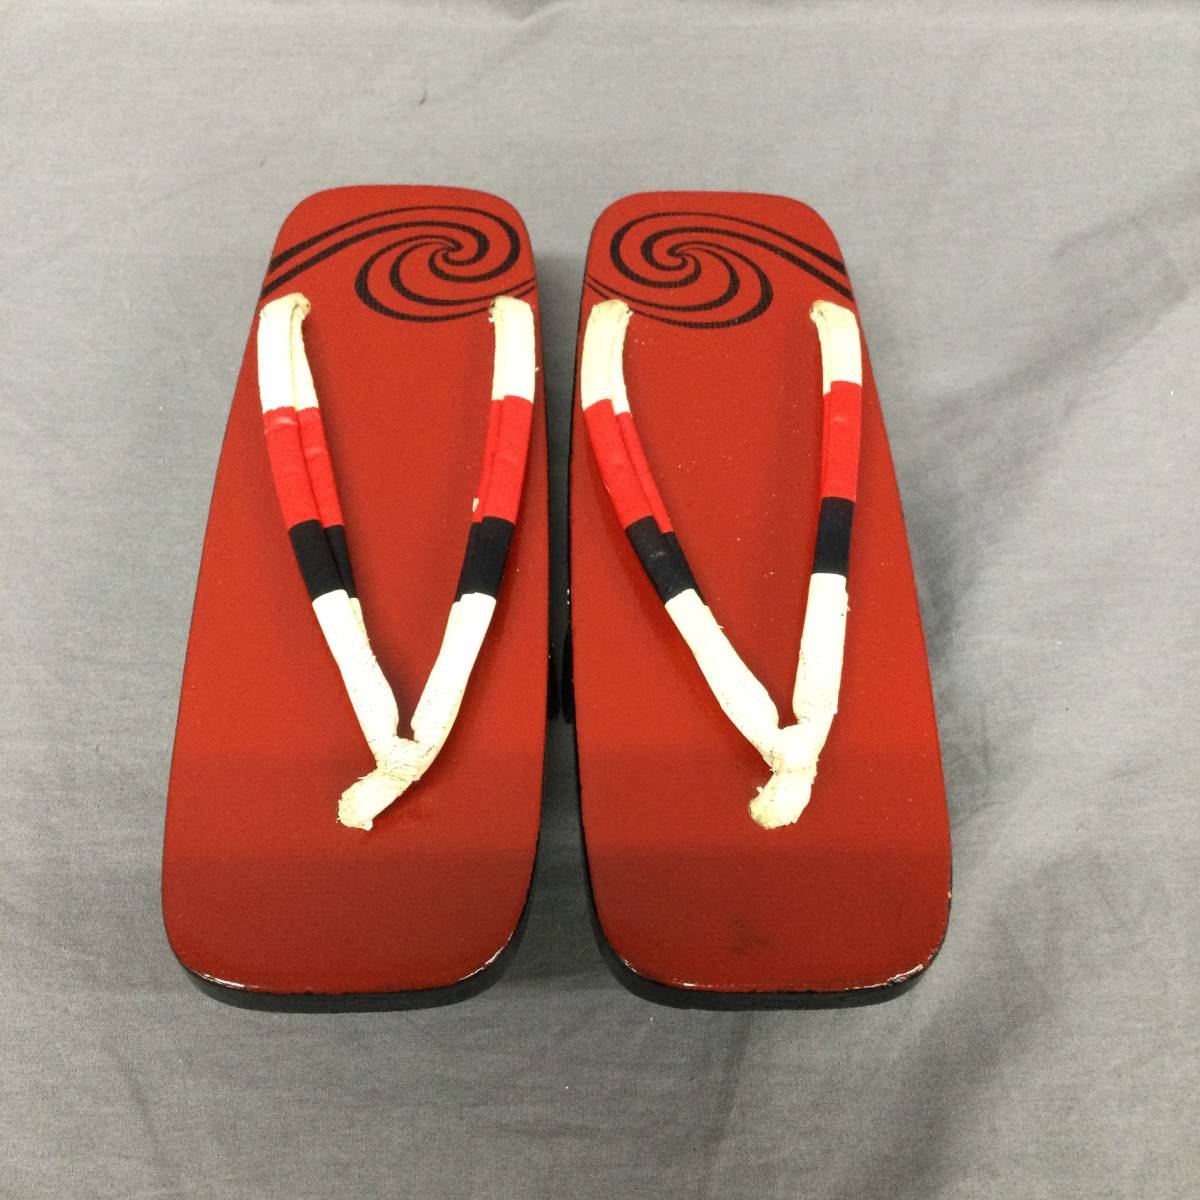 060201 254805-3 geta .. производитель неизвестен красный серия цвет аксессуары для кимоно кимоно юката надеть обувь предмет аксессуары 